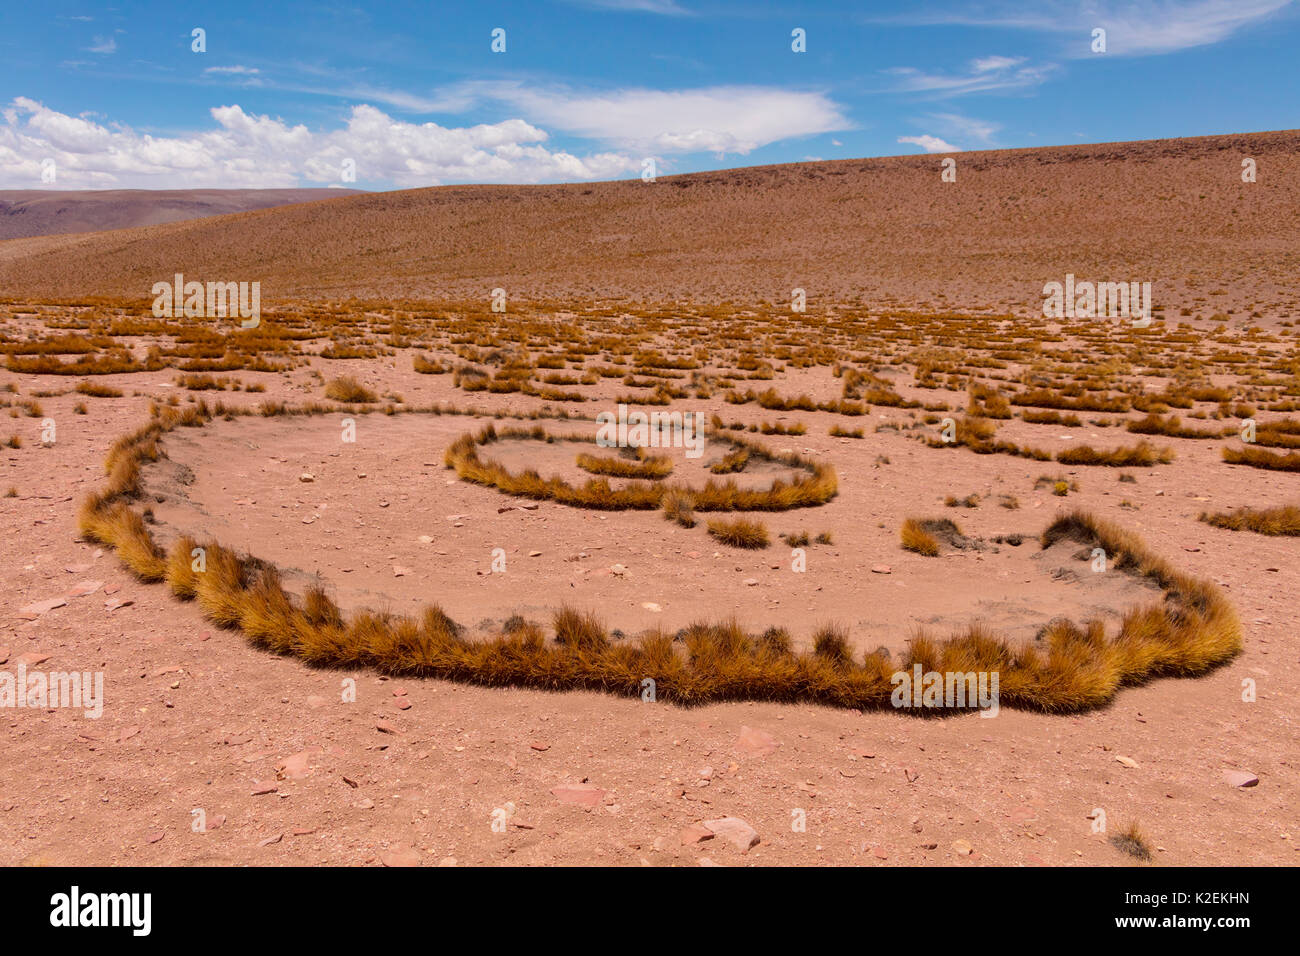 Altiplano haut avec de l'herbe tussock appelée Paja brava (Festuca orthophylla) montrant la croissance clonale propagation. La Bolivie. Décembre 2016. Banque D'Images